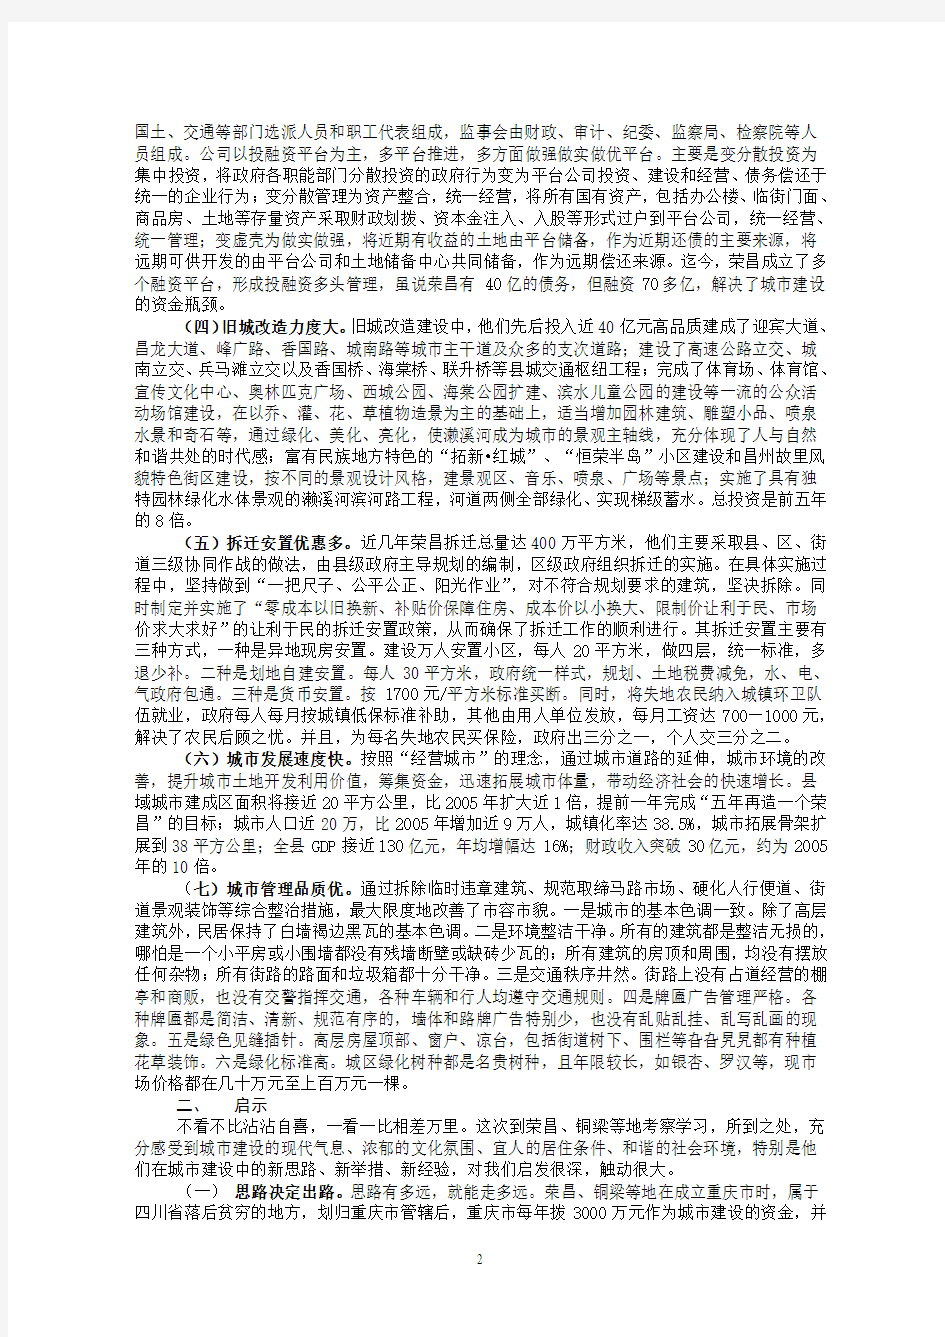 关于赴重庆荣昌、铜梁等地考察城建和土地管理的报告